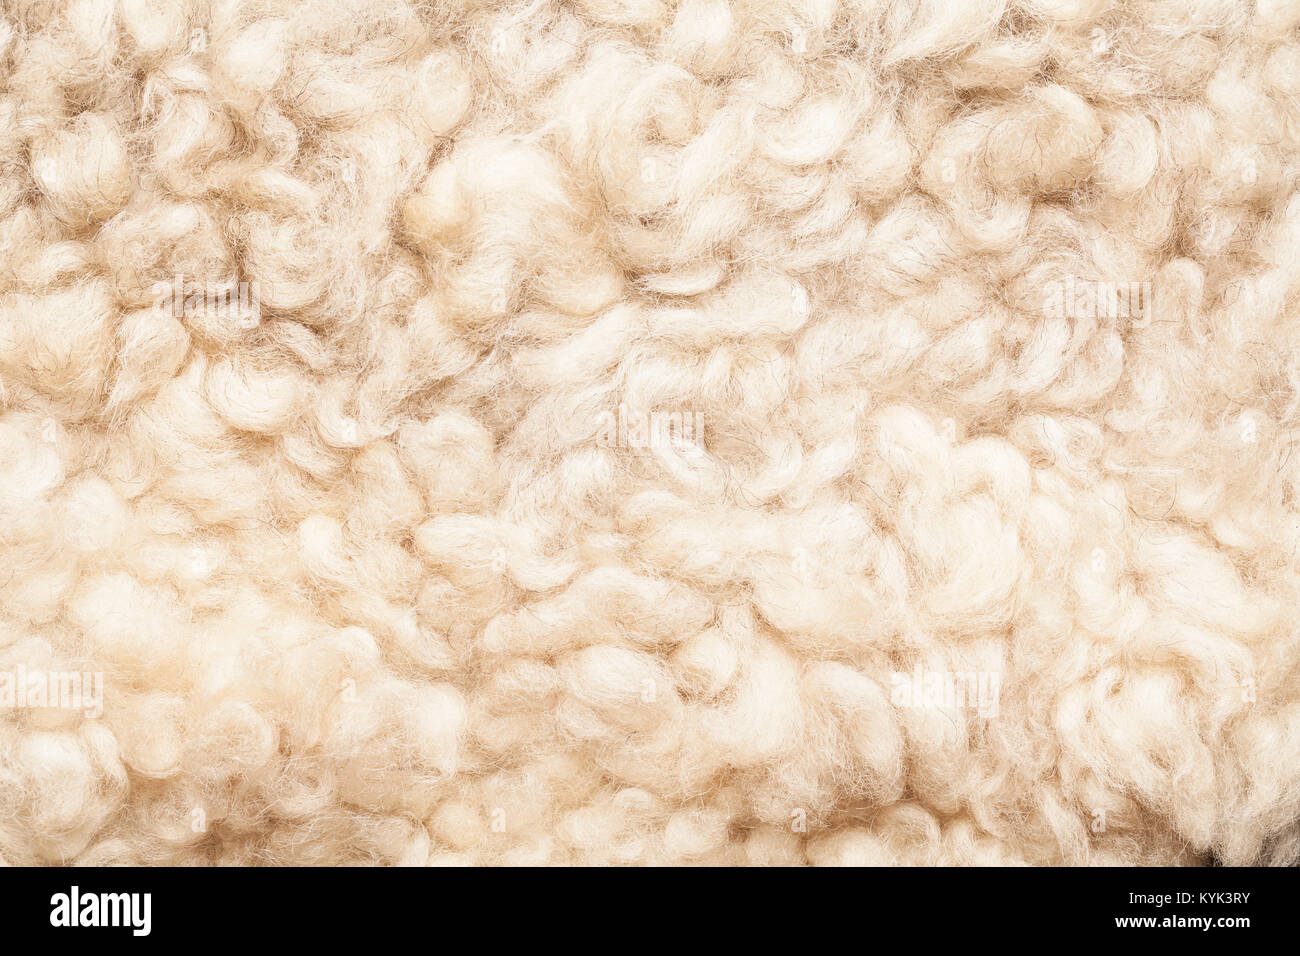 Schafe fell. Wolle Textur. Closeup Hintergrund Stockfoto